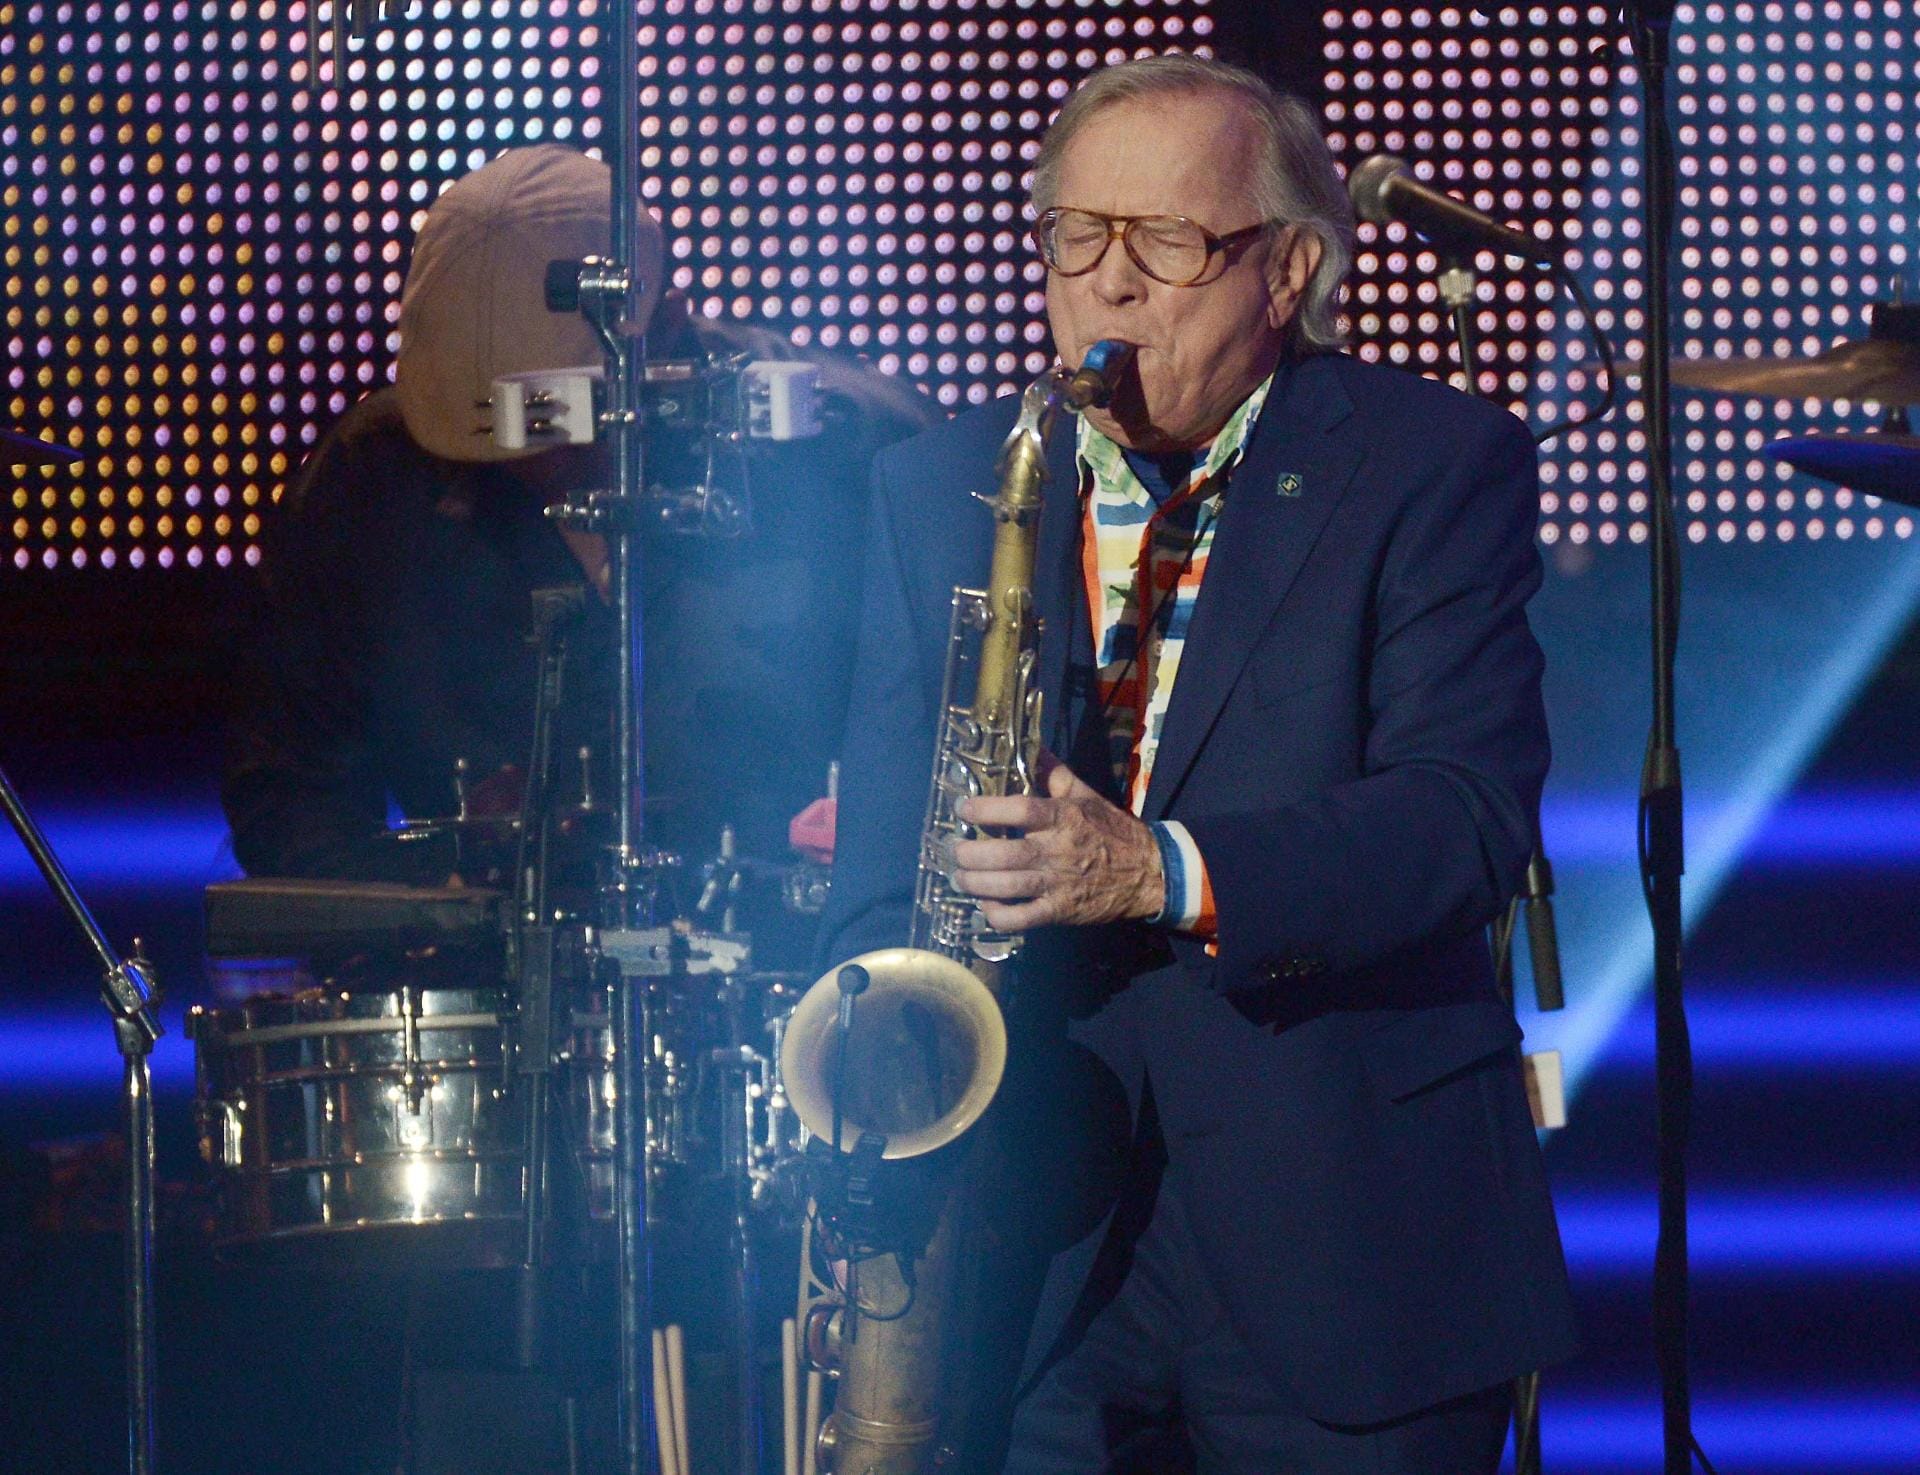 Seit Jahrzehnten prägt Klaus Doldinger die deutsche Jazz-Musik. Hier spielt er 2014 bei der Verleihung der Grimme-Preise 2014 in Marl. Am 12. Mai wurde der Künstler 80 Jahre alt.